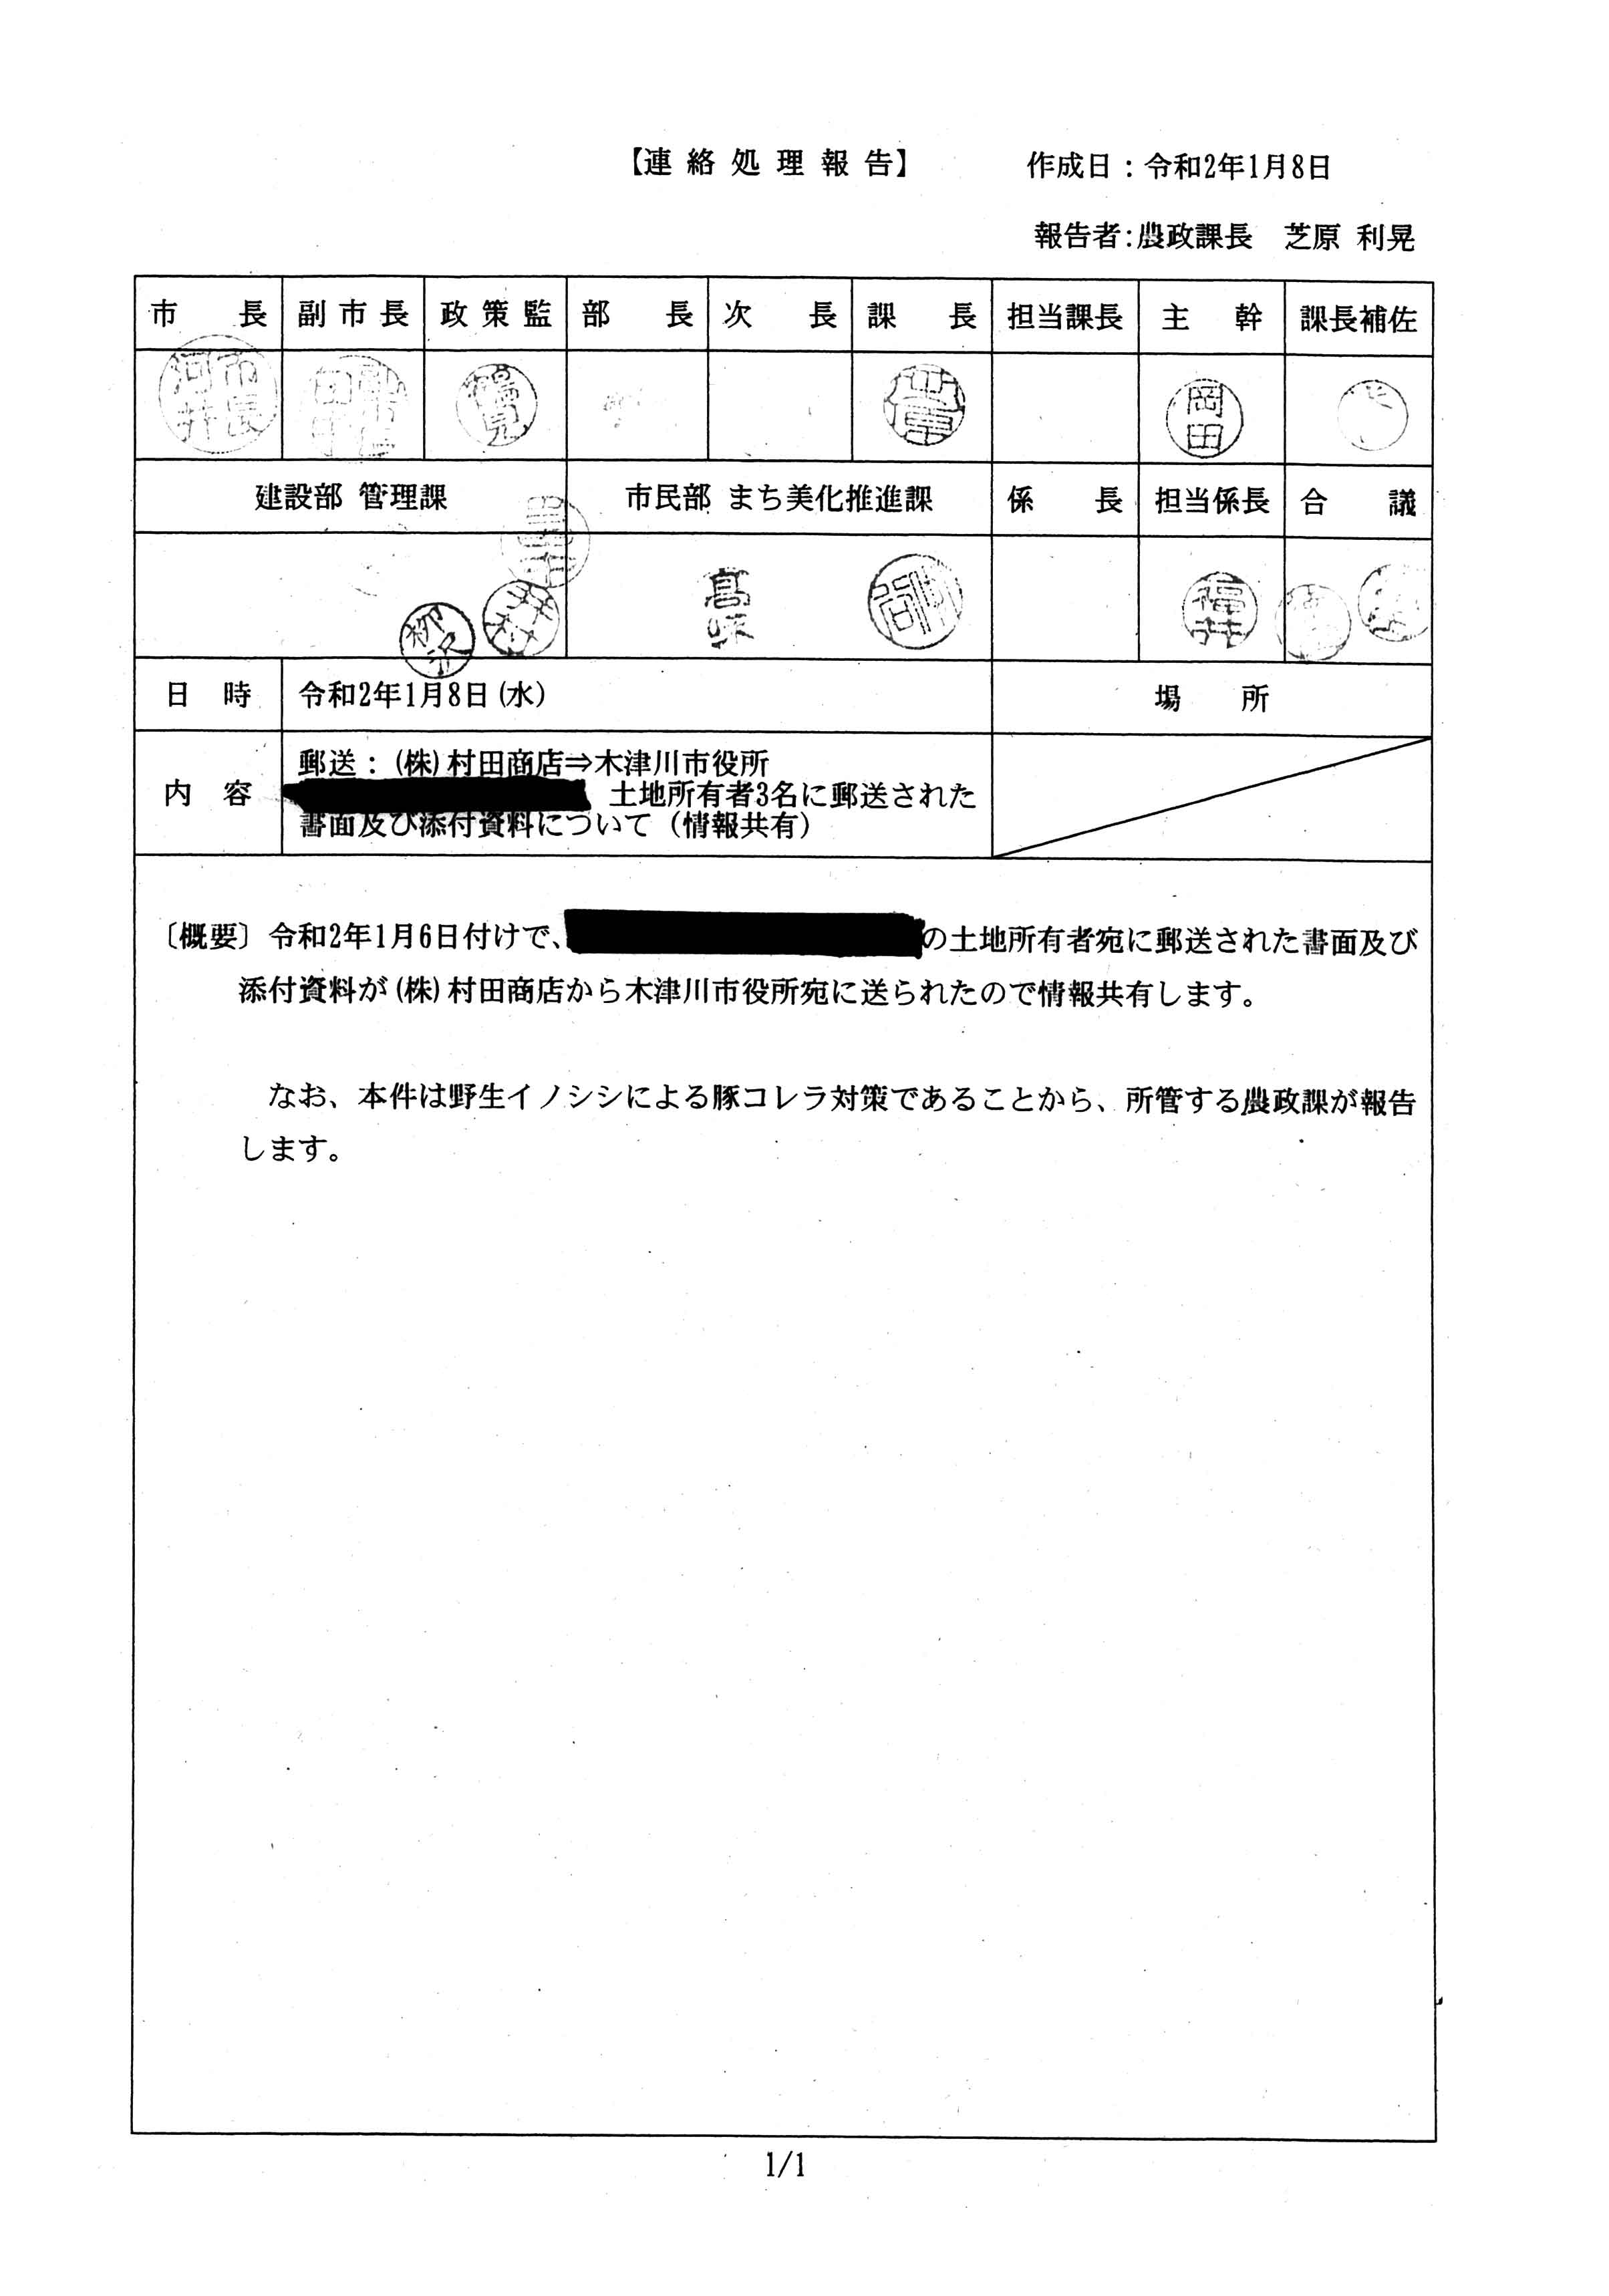 令和2年1月8日付連絡処理報告-村田商店から長尾2所有者に郵送された書面および添付資料について-01